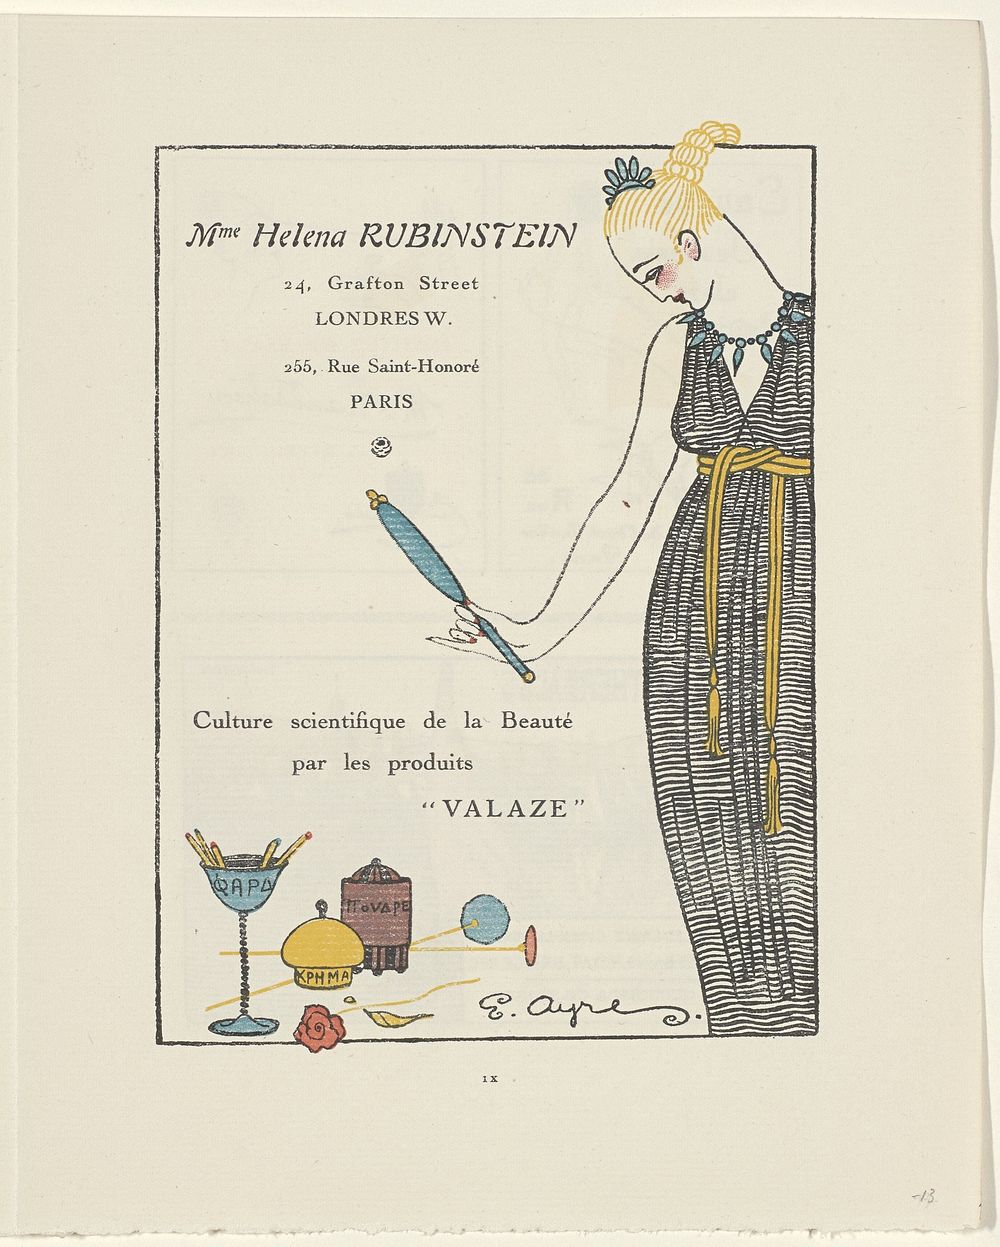 Gazette du Bon Ton, 1914 - No. 6, p. IX: Advertentie Helena Rubinstein (1914) by E Ayres, anonymous, Lucien Vogel, Paul…